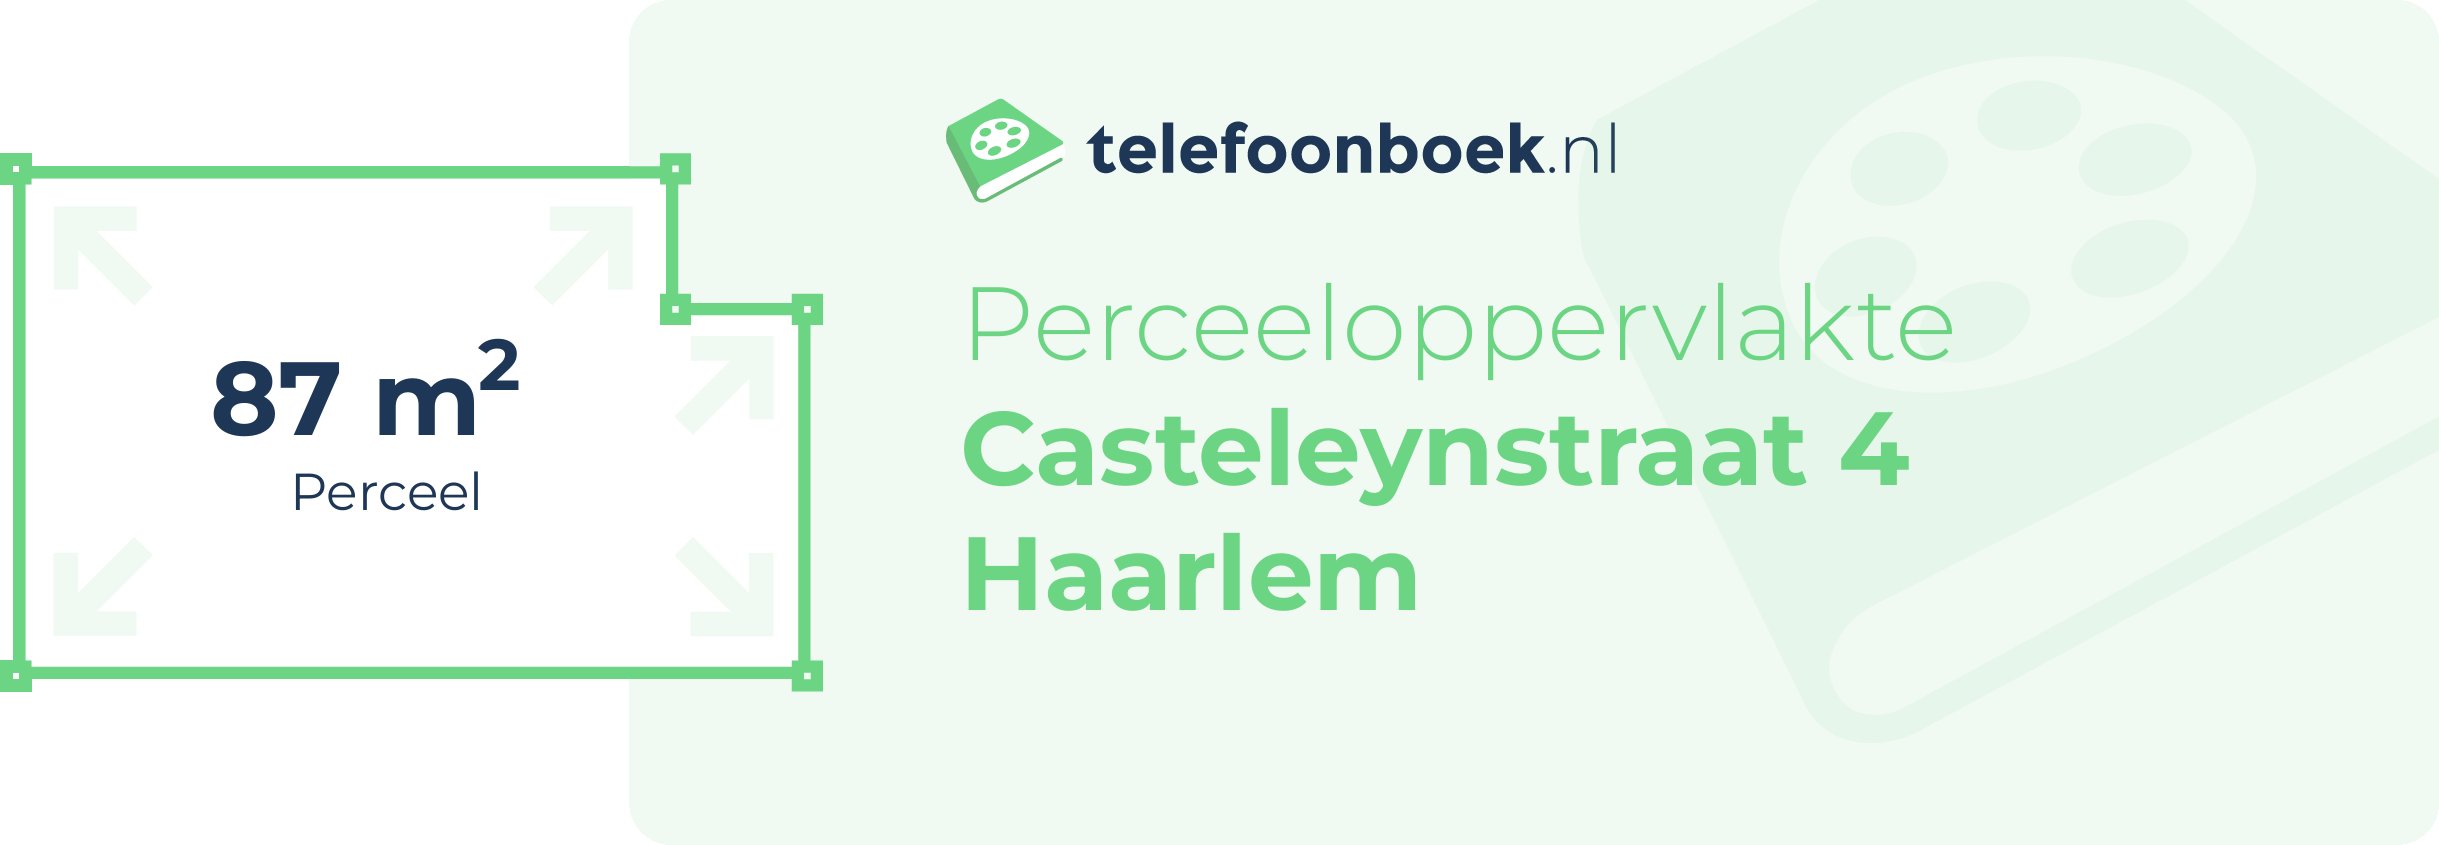 Perceeloppervlakte Casteleynstraat 4 Haarlem